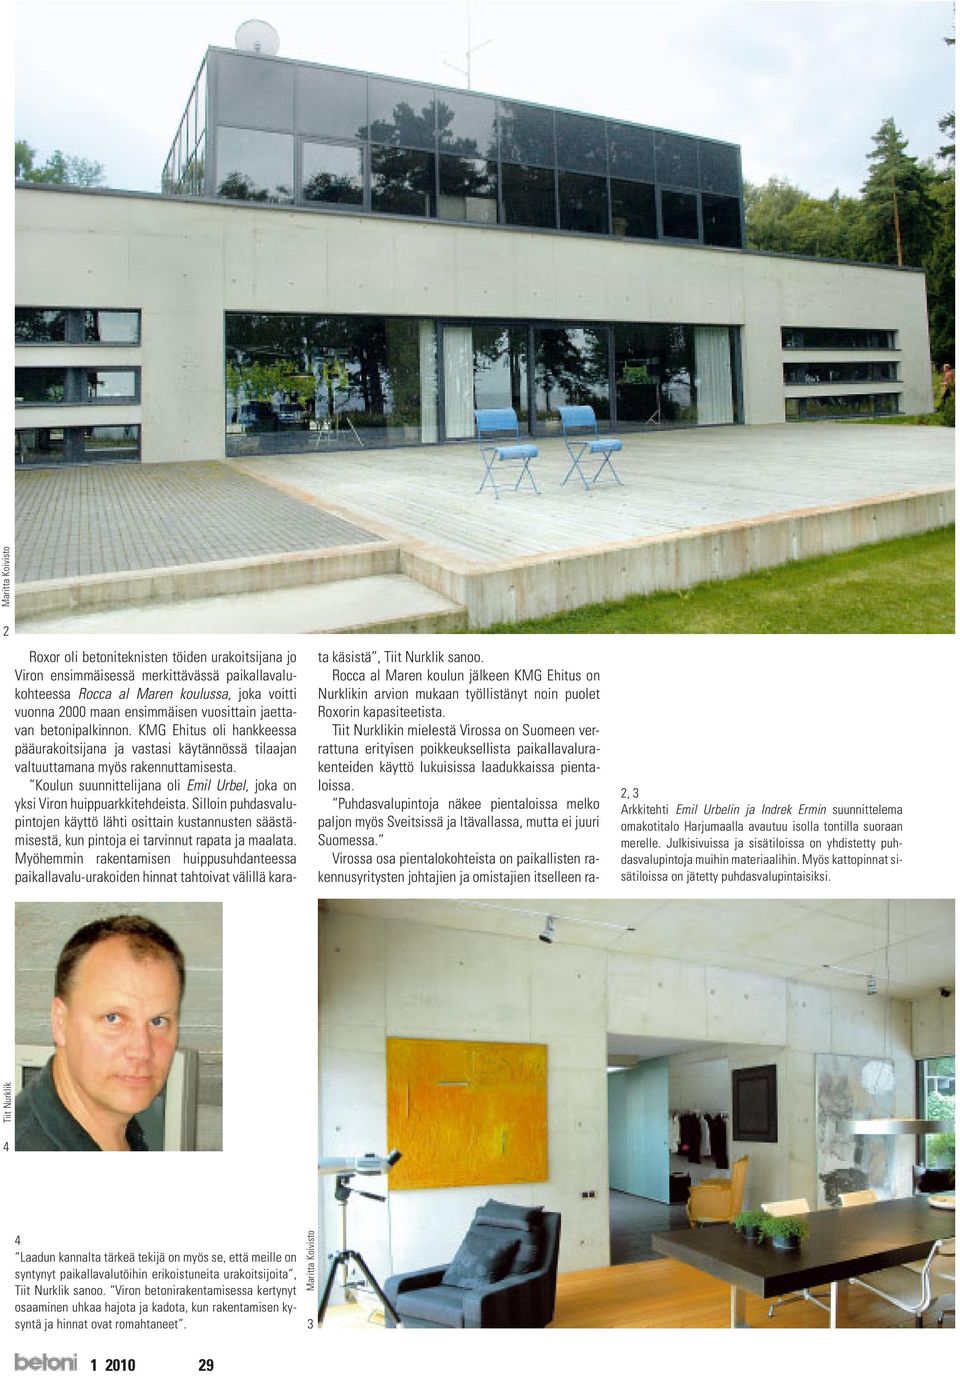 Koulun suunnittelijana oli Emil Urbel, joka on yksi Viron huippuarkkitehdeista. Silloin puhdasvalupintojen käyttö lähti osittain kustannusten säästämisestä, kun pintoja ei tarvinnut rapata ja maalata.